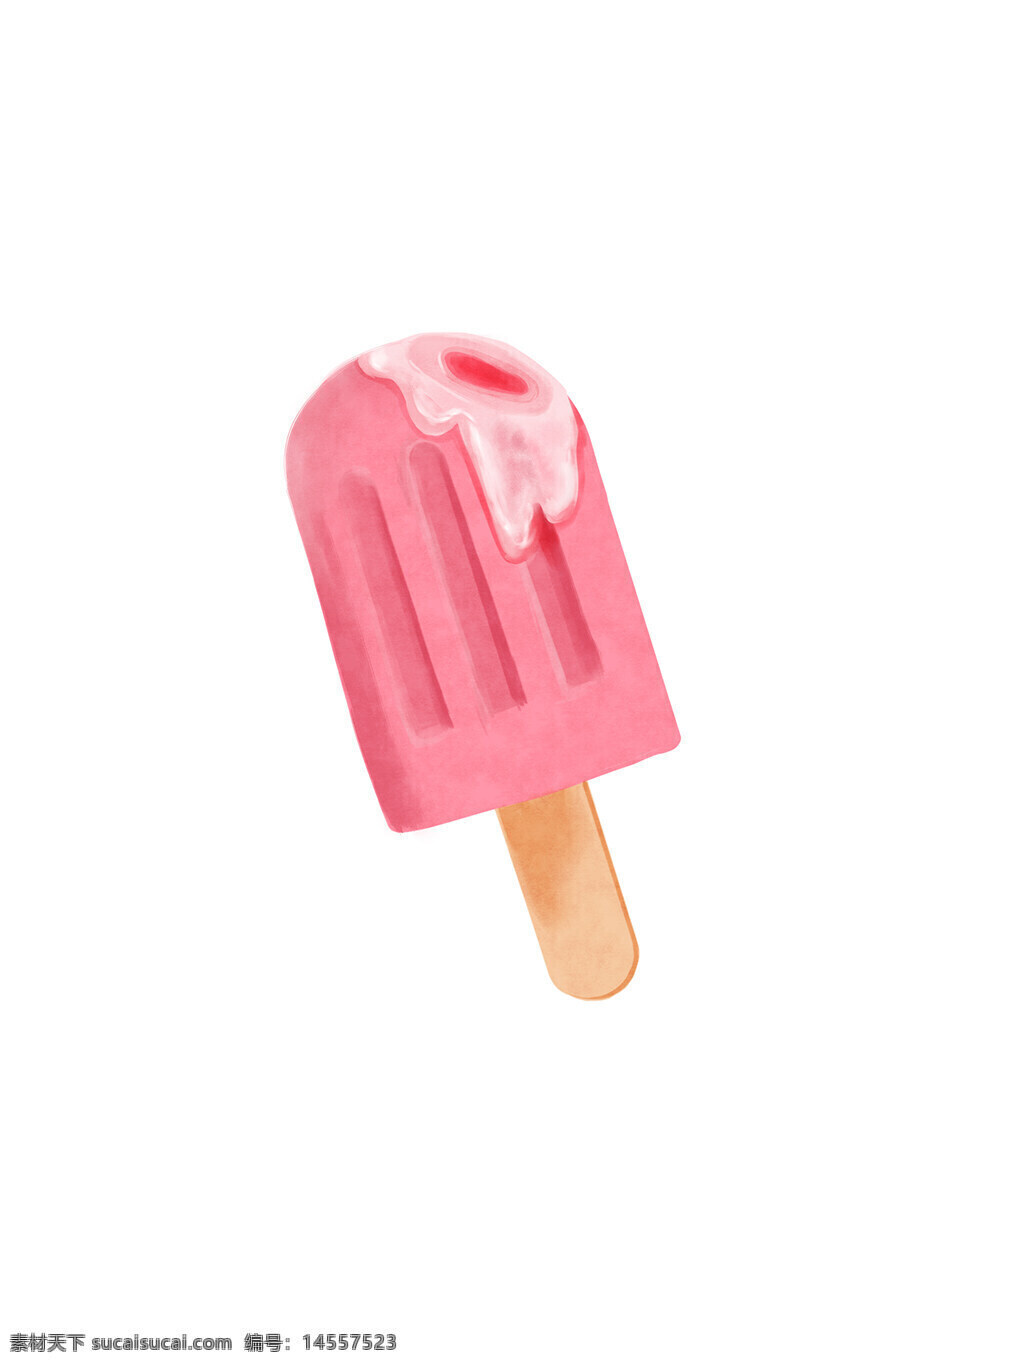 雪糕 融化 夏天 夹心 粉色 草莓味